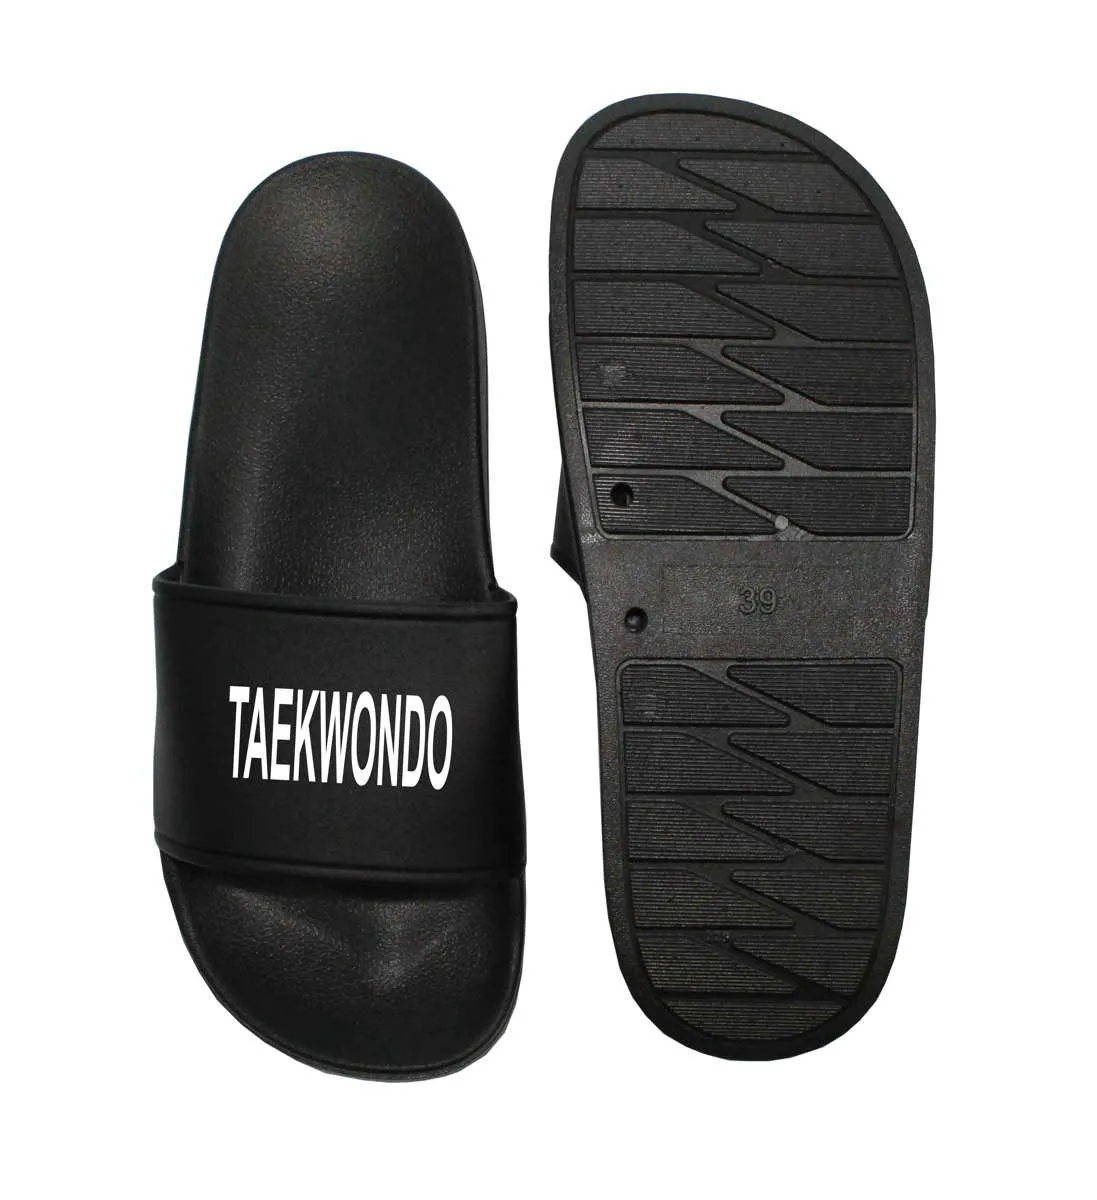 Zapatillas de taekwondo negras